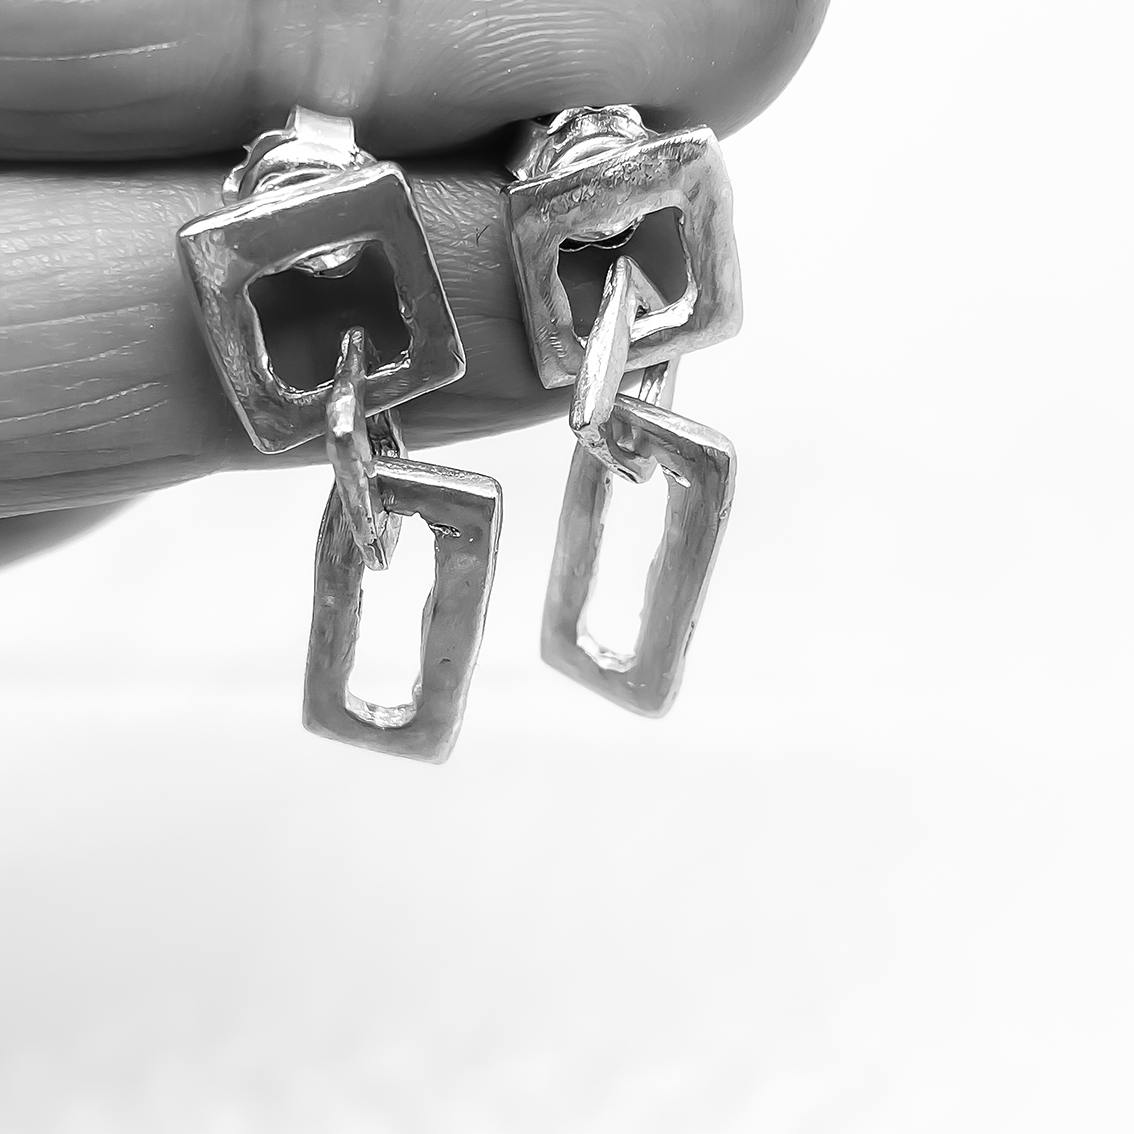 Modernist Earrings No. 3 - Geometric Cutout Drop Earrings in Sterling Silver